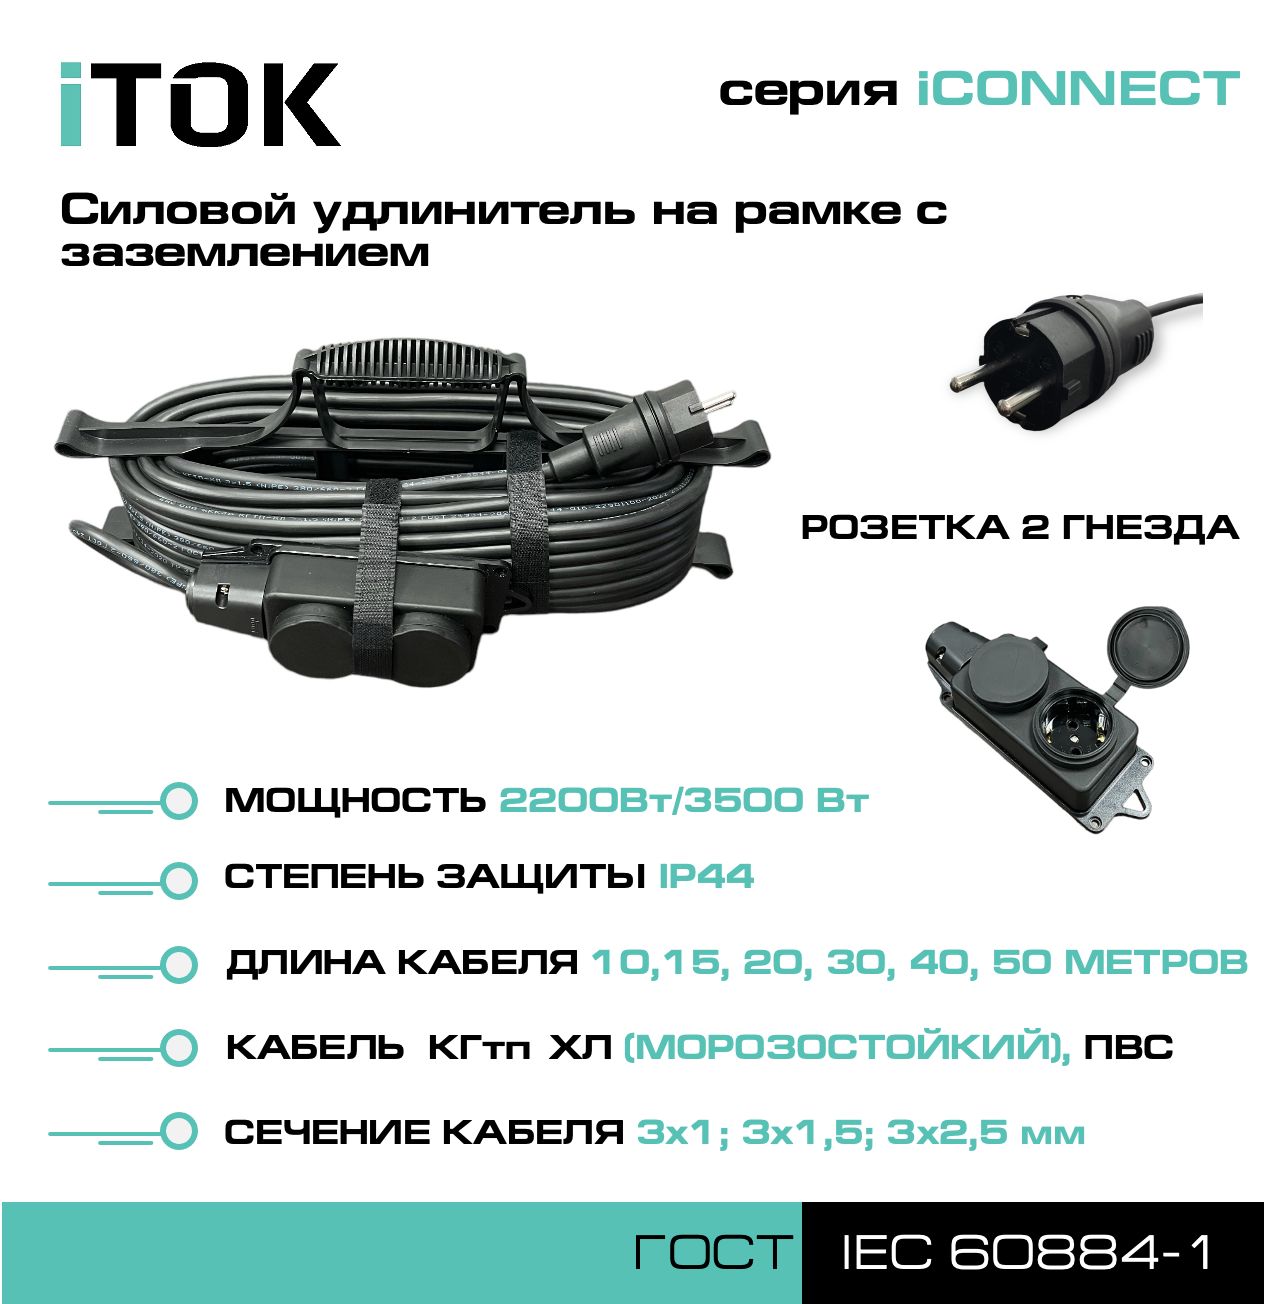 Удлинитель на рамке с заземлением серии iTOK iCONNECT КГтп-ХЛ 3х2,5 мм 2 гнезда IP44 15 м